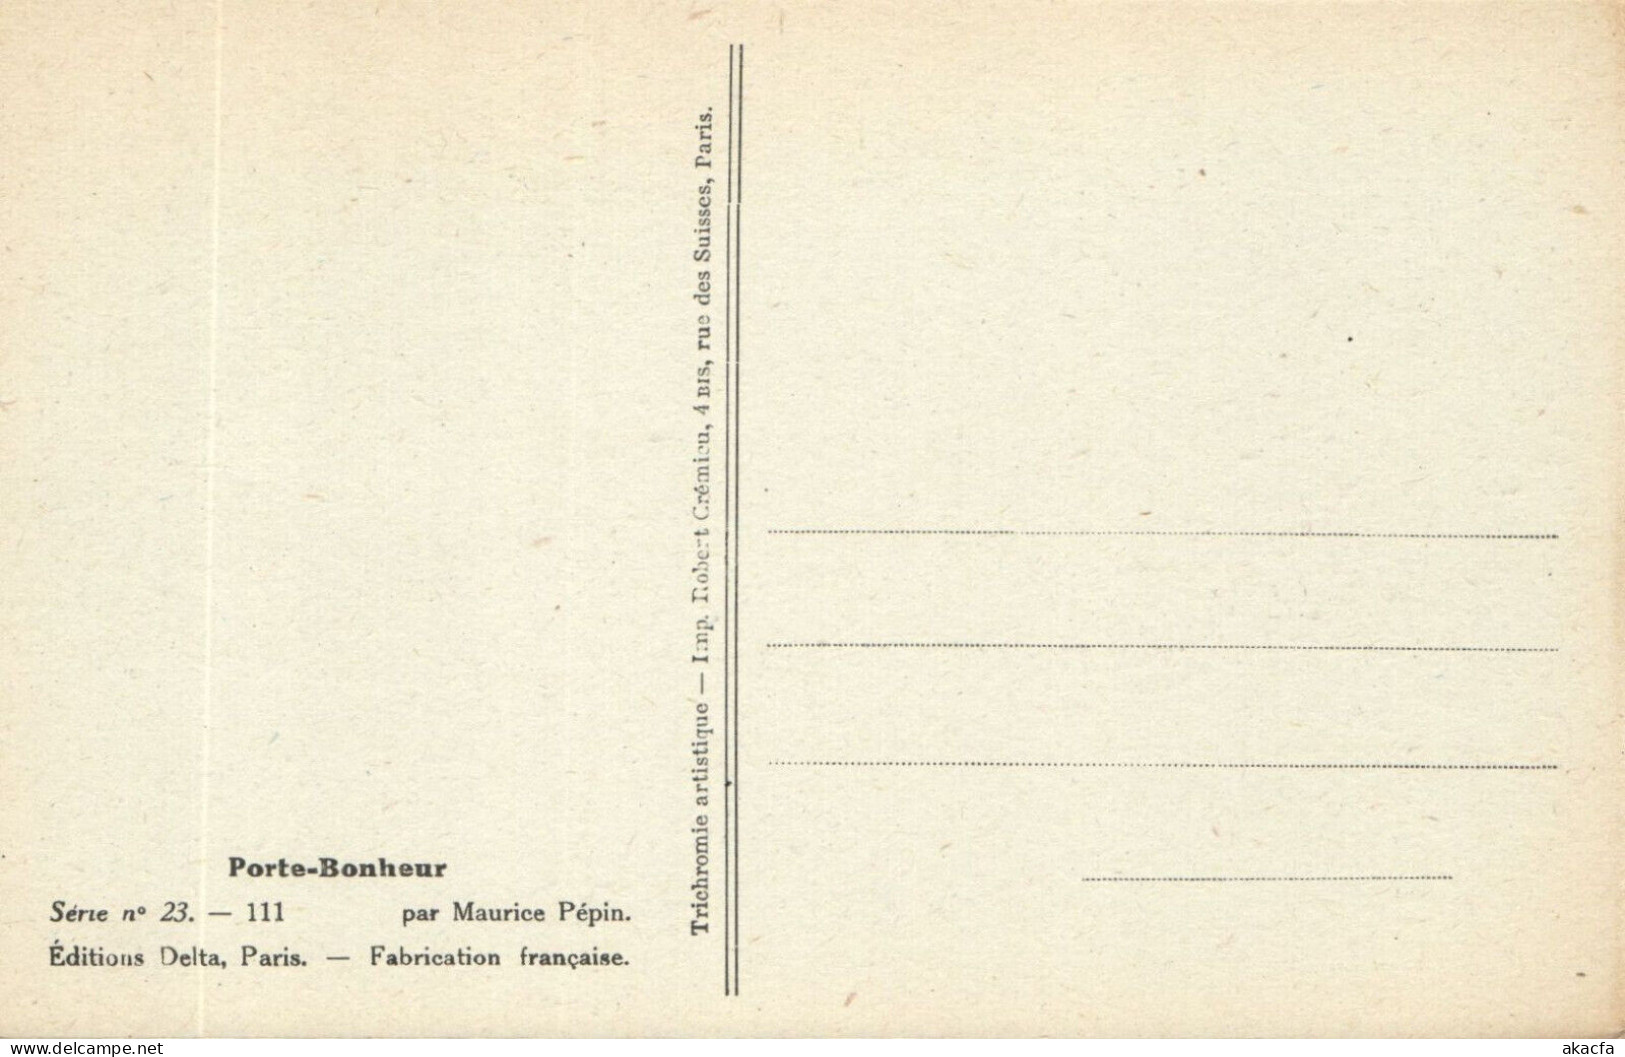 PC ARTIST SIGNED, M. PÉPIN, RISQUE, PORTE BONHEUR, Vintage Postcard (b50561) - Pepin